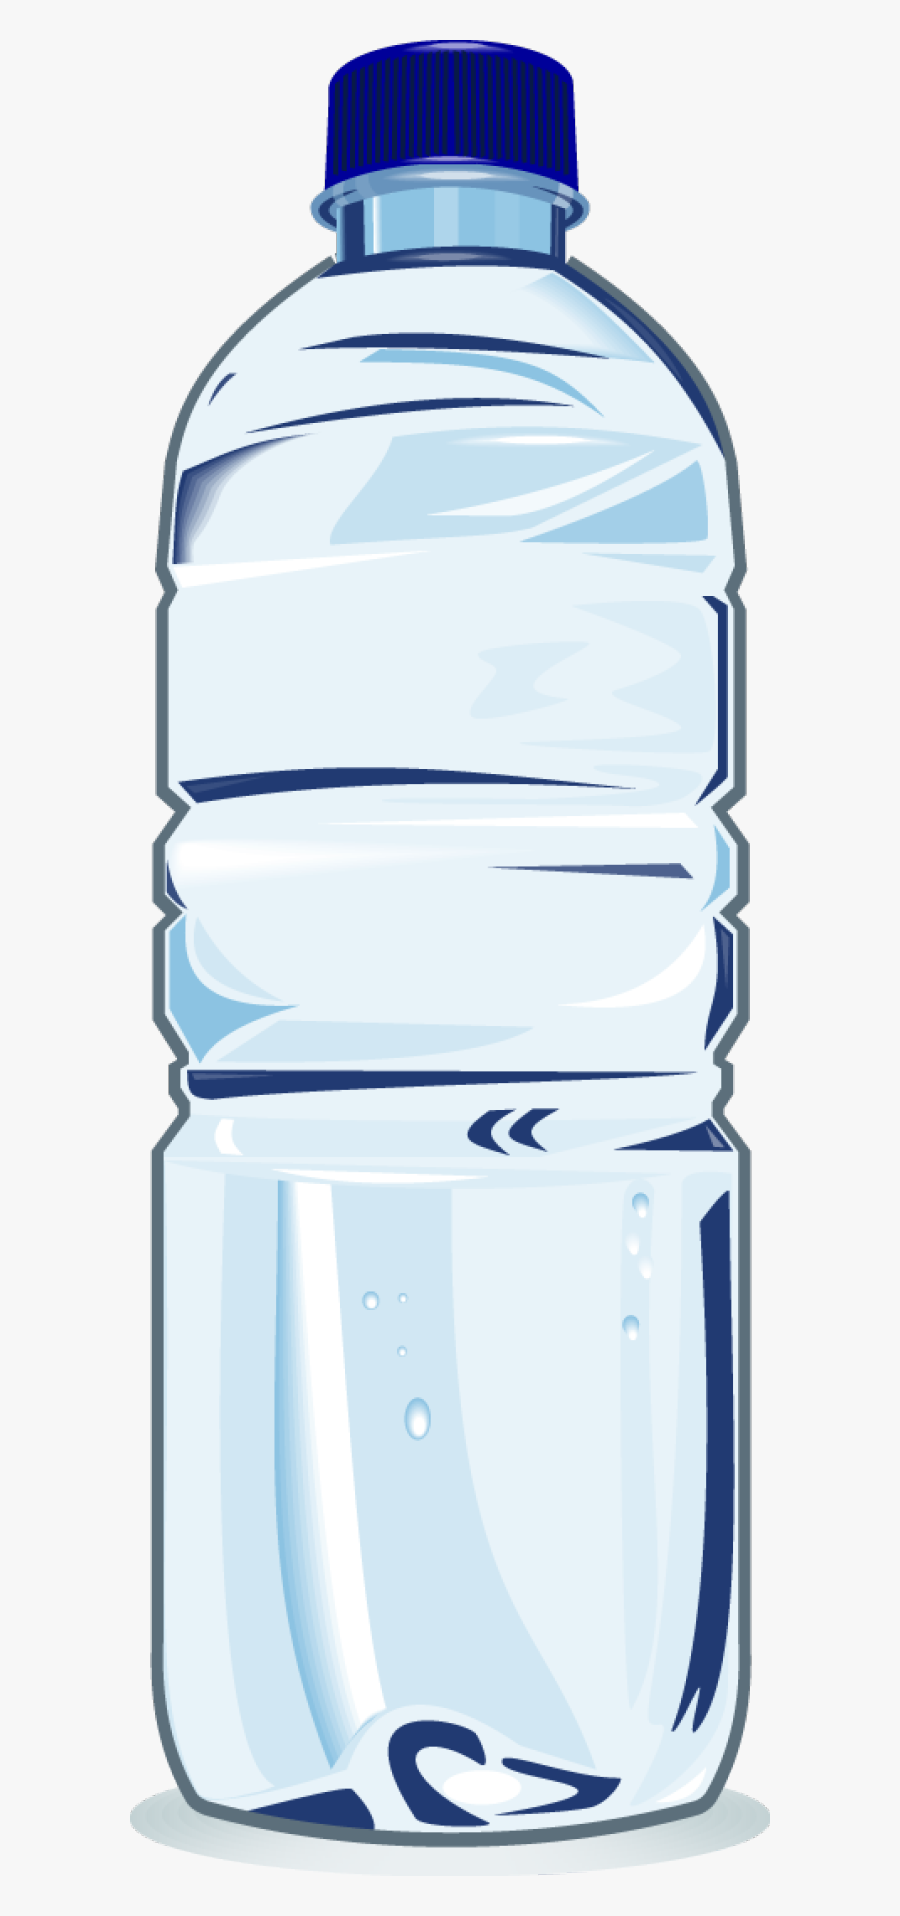 Bottle Clip Art - Clip Art Plastic Water Bottle, Transparent Clipart